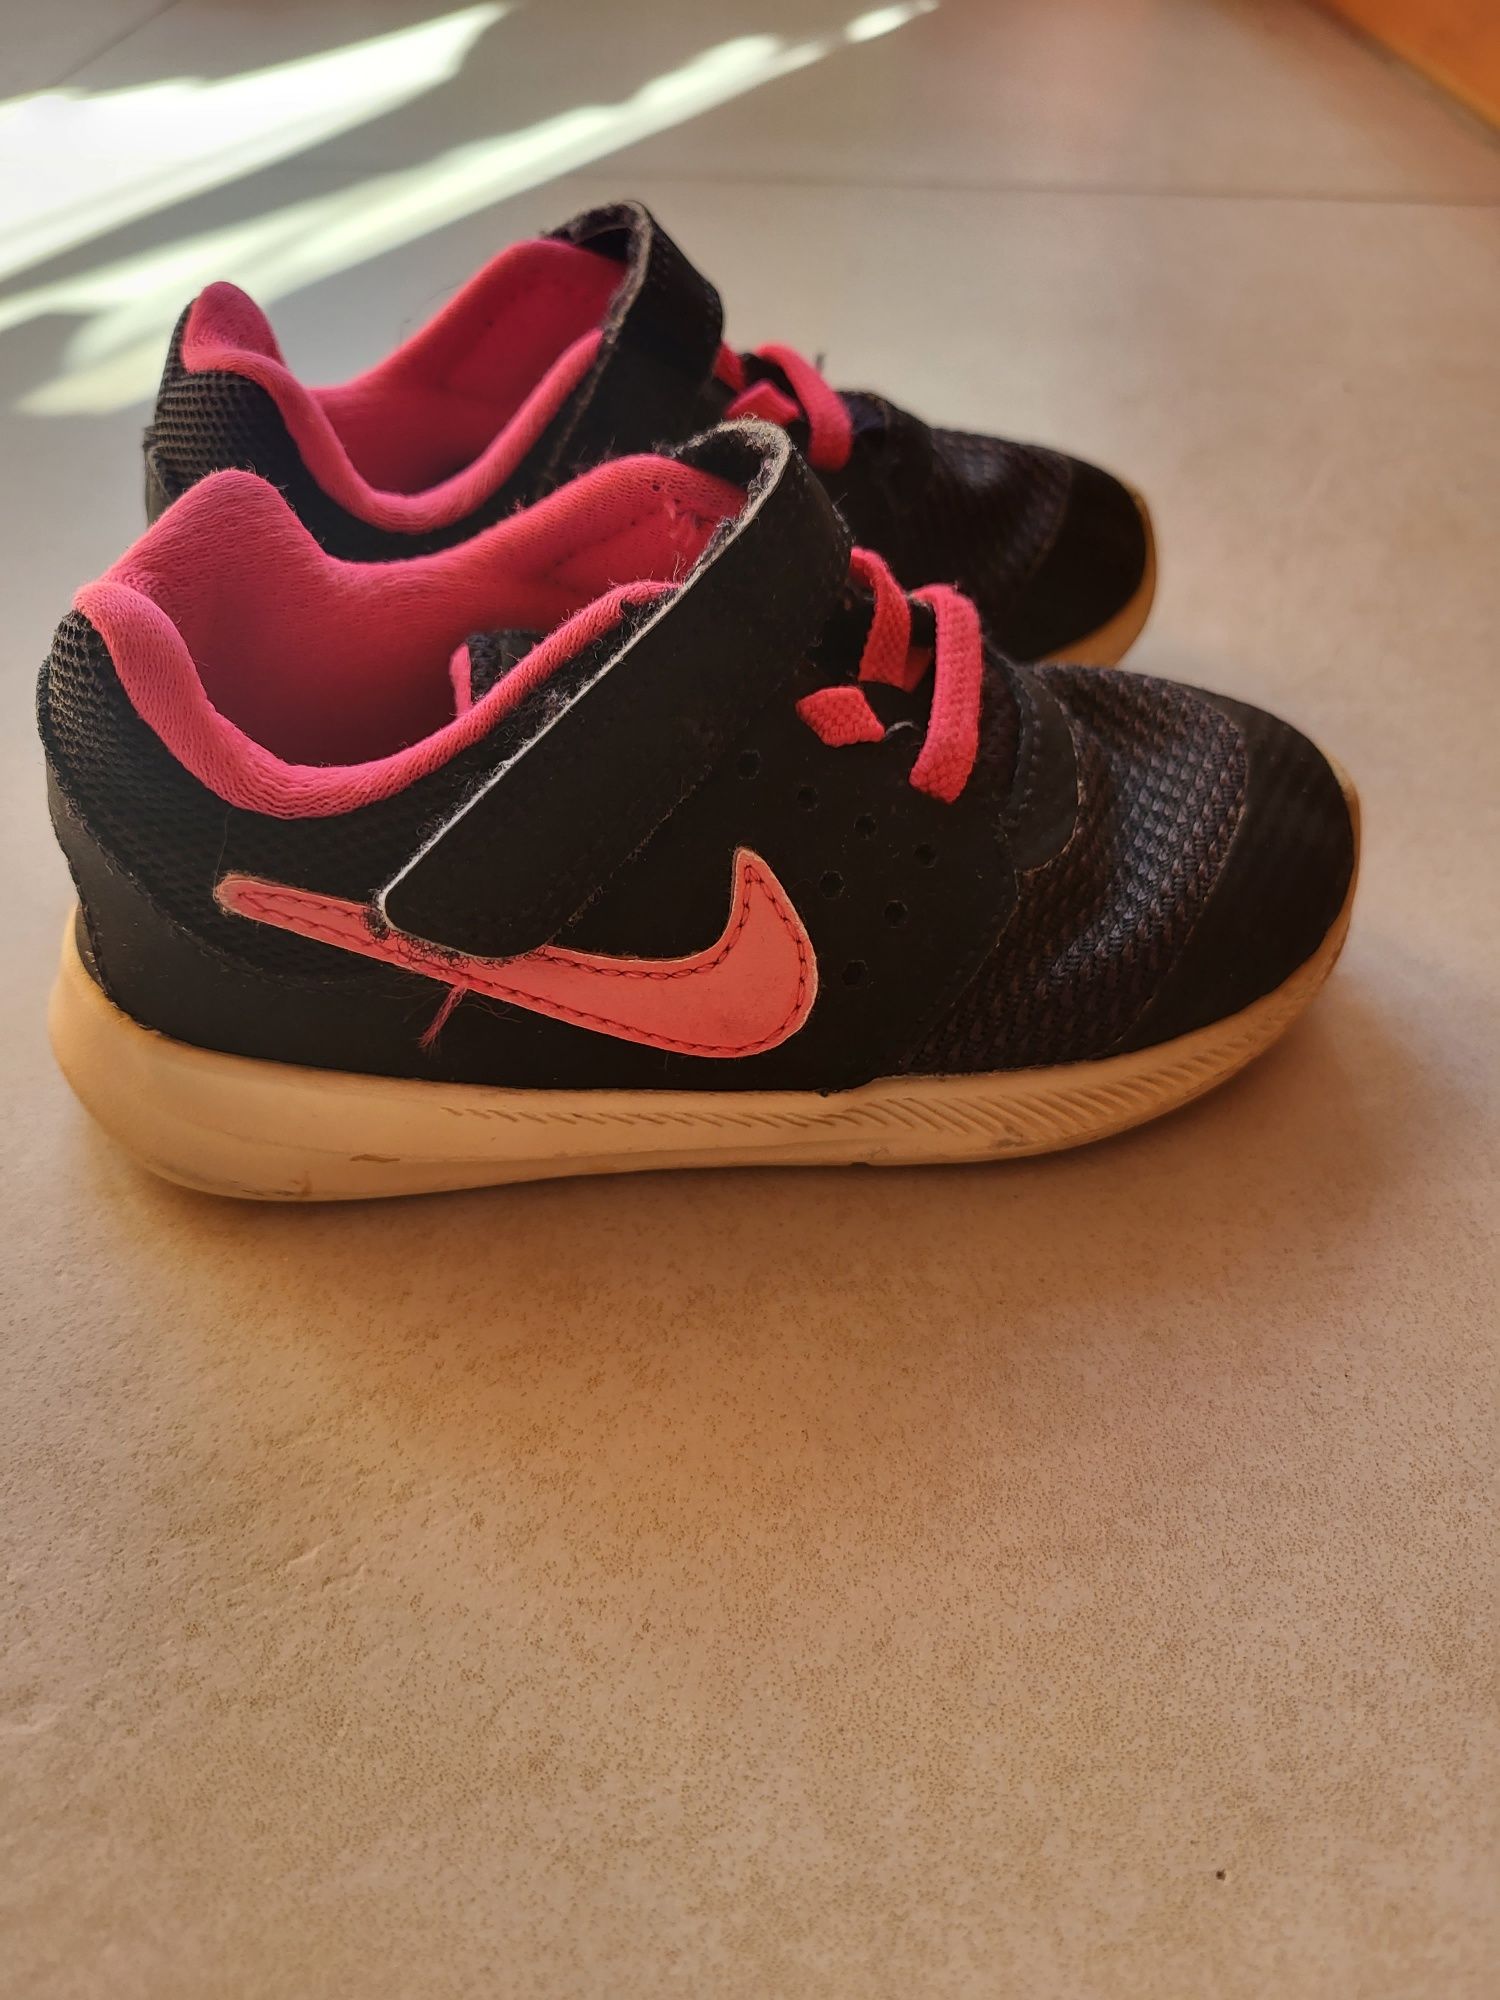 Buty dla dziewczynki rozmiar 25 marki Nike na rzepy